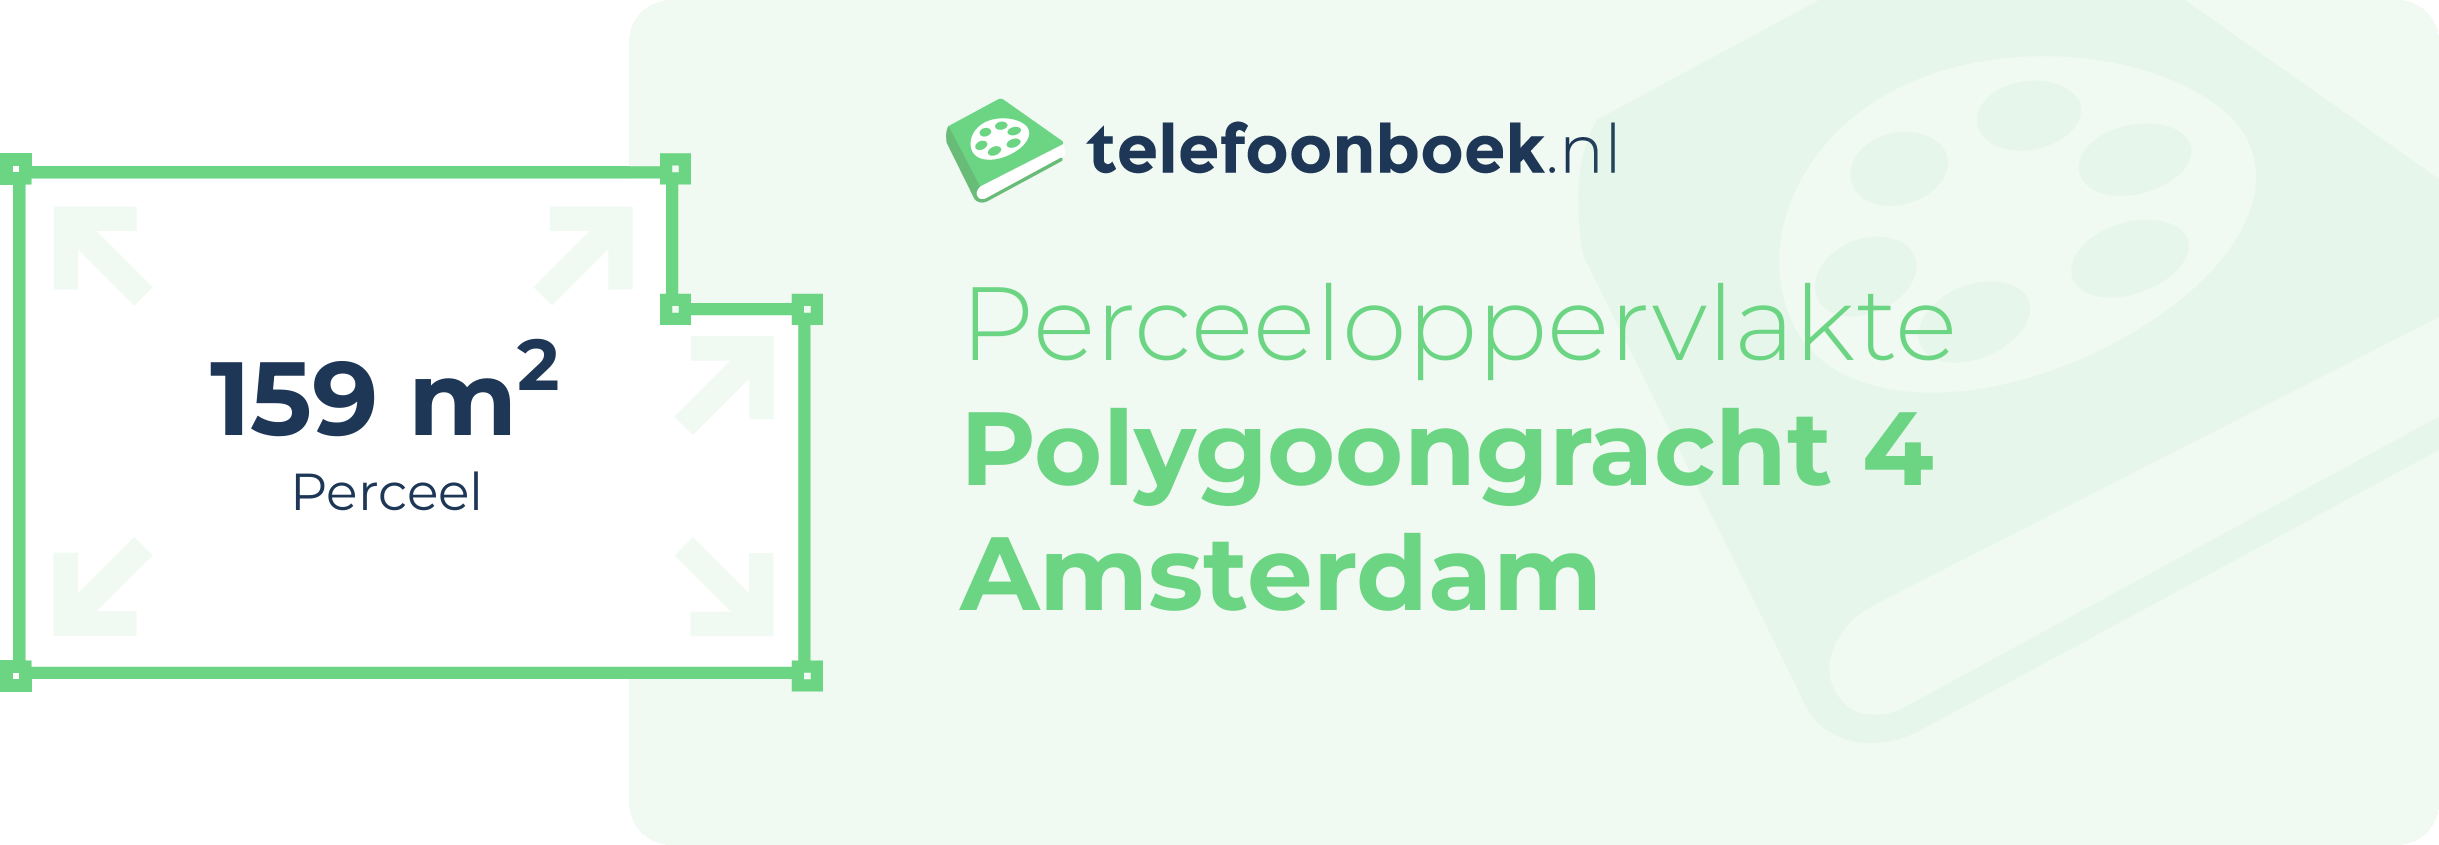 Perceeloppervlakte Polygoongracht 4 Amsterdam